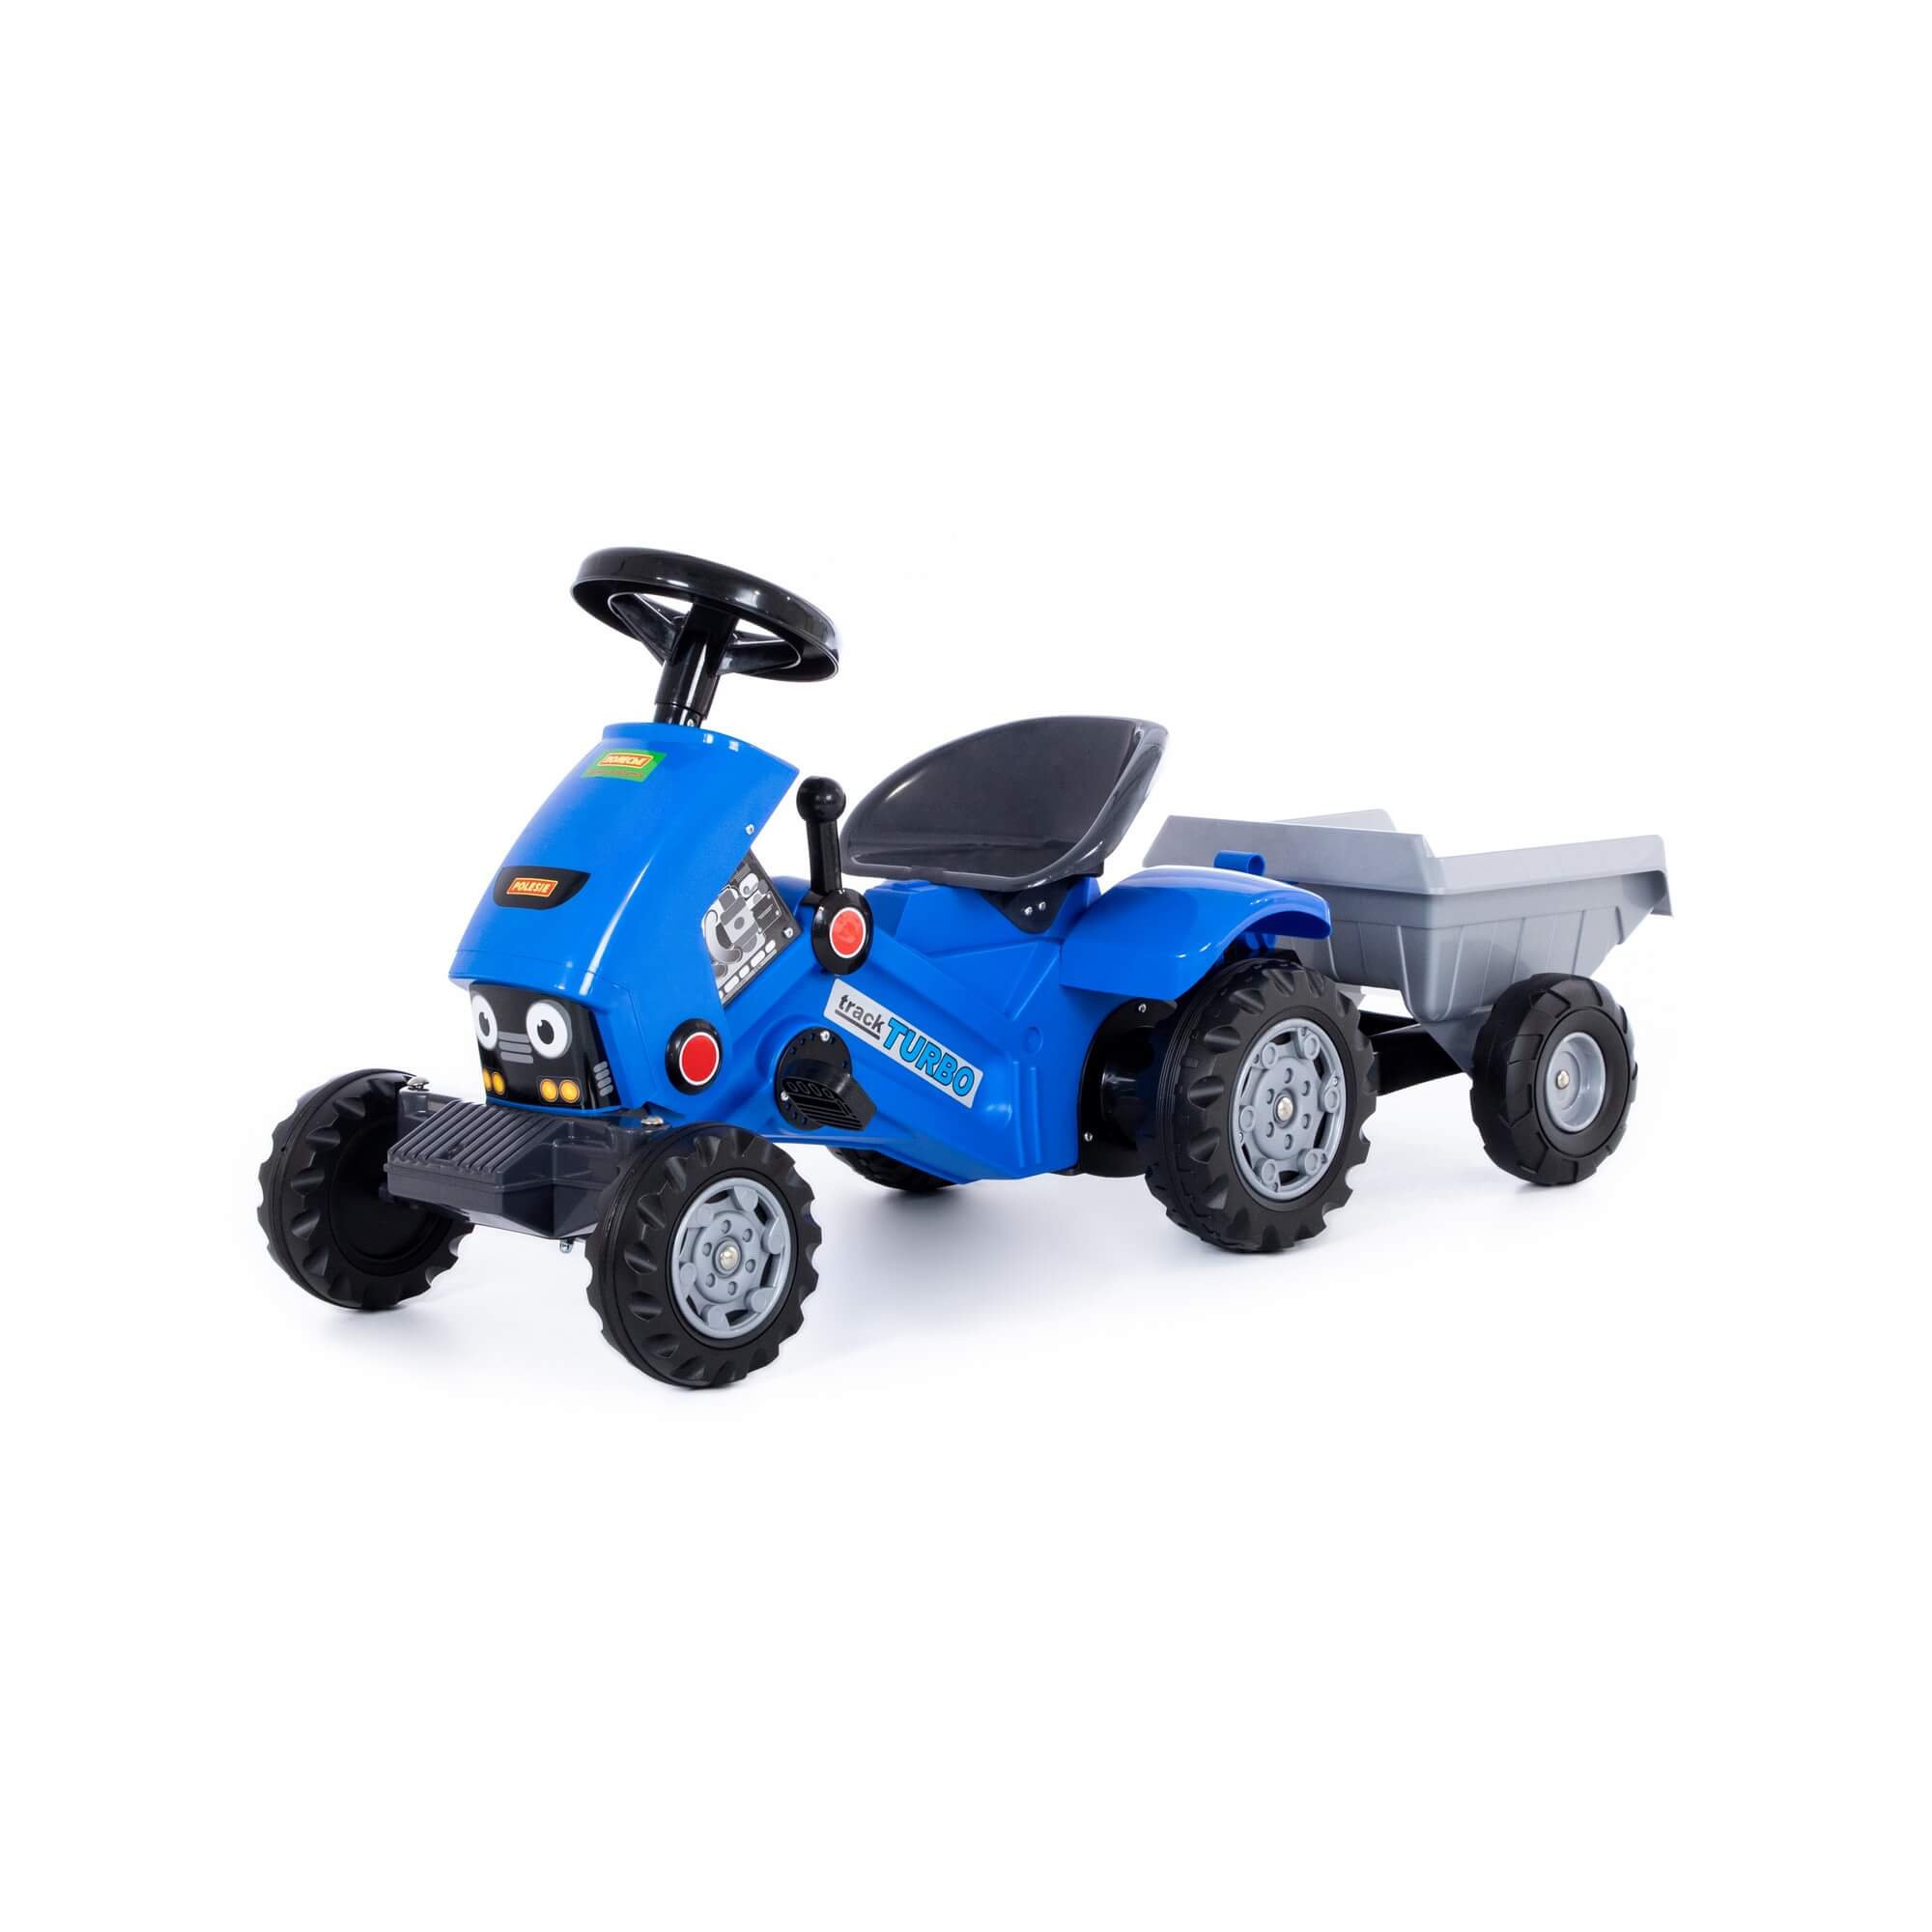 Каталка-трактор Полесье Turbo-2, с педалями, синяя, с полуприцепом главное движение 10 ключей для здорового и красивого тела синяя